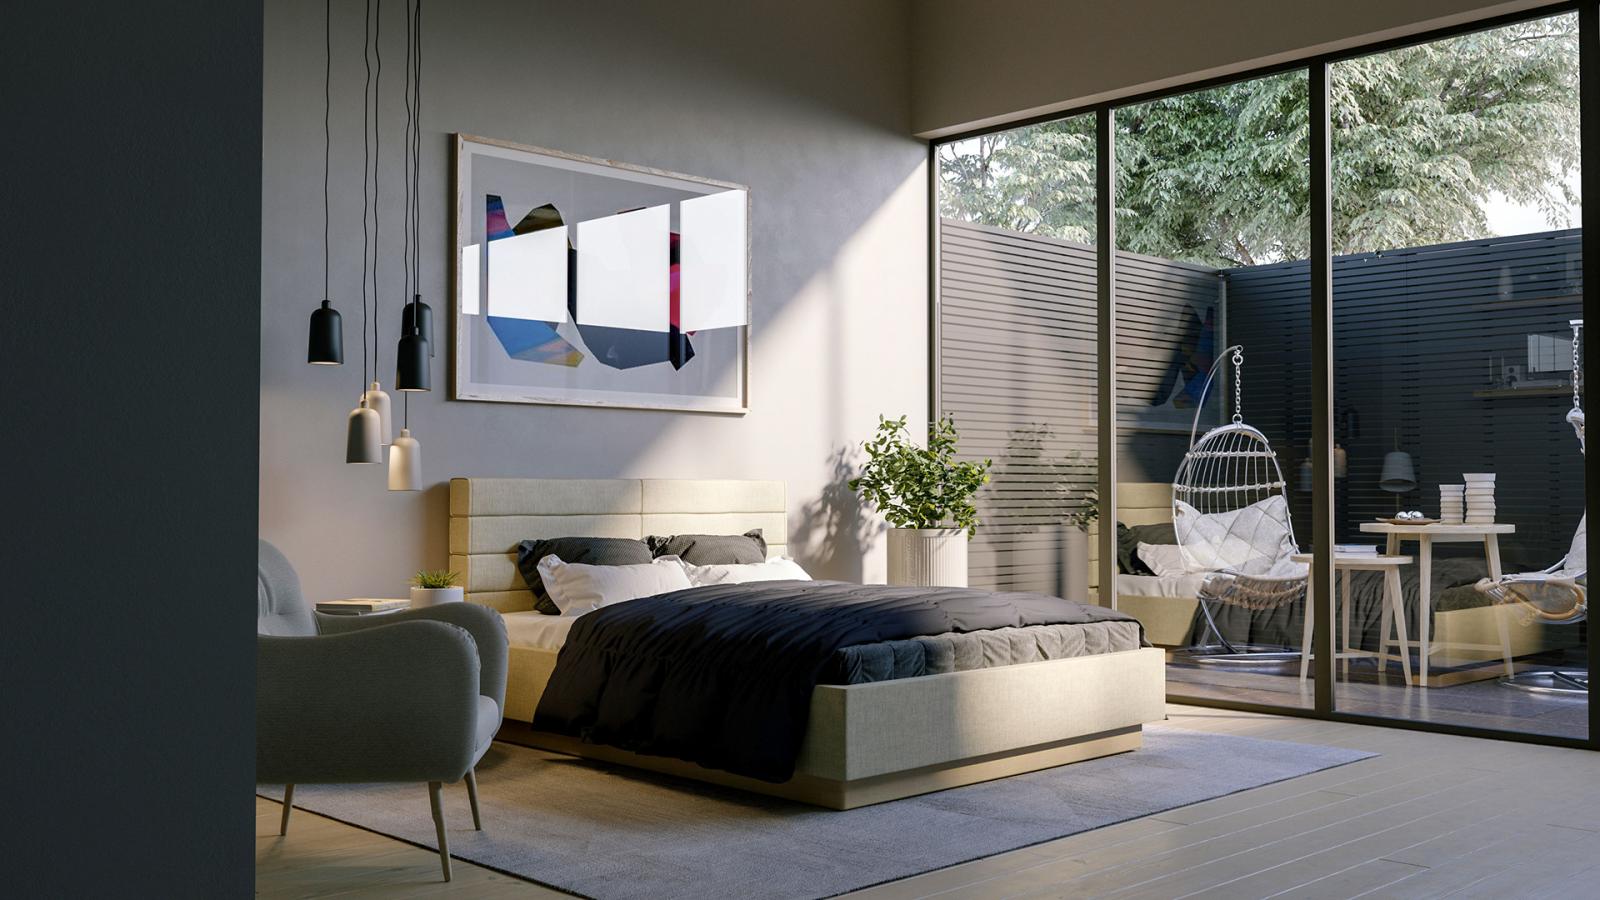 Hình ảnh phòng ngủ hiện đại với tông màu xám trắng chủ đạo, cửa kính mở ra sân vườn thư giãn